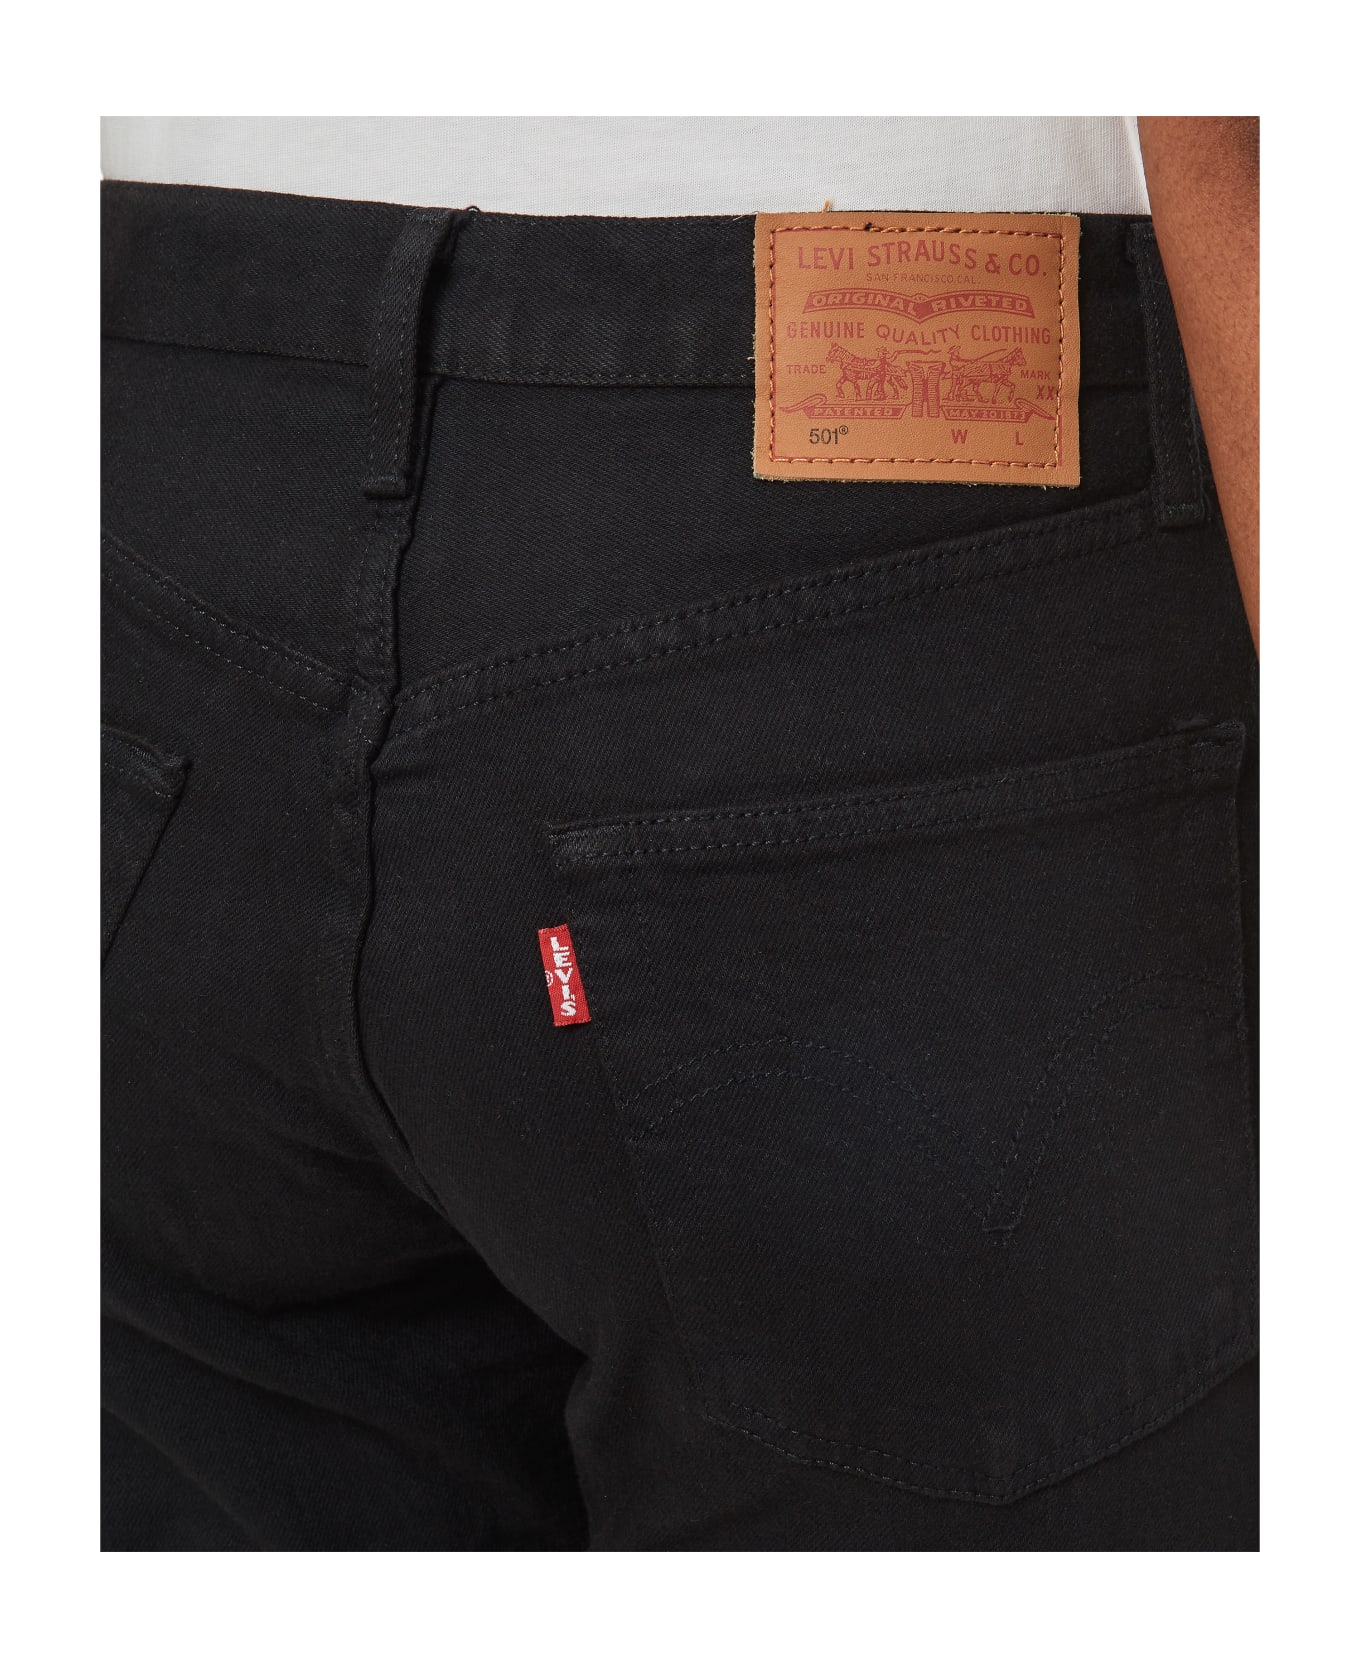 Levi's 501 Crop Jeans - Black